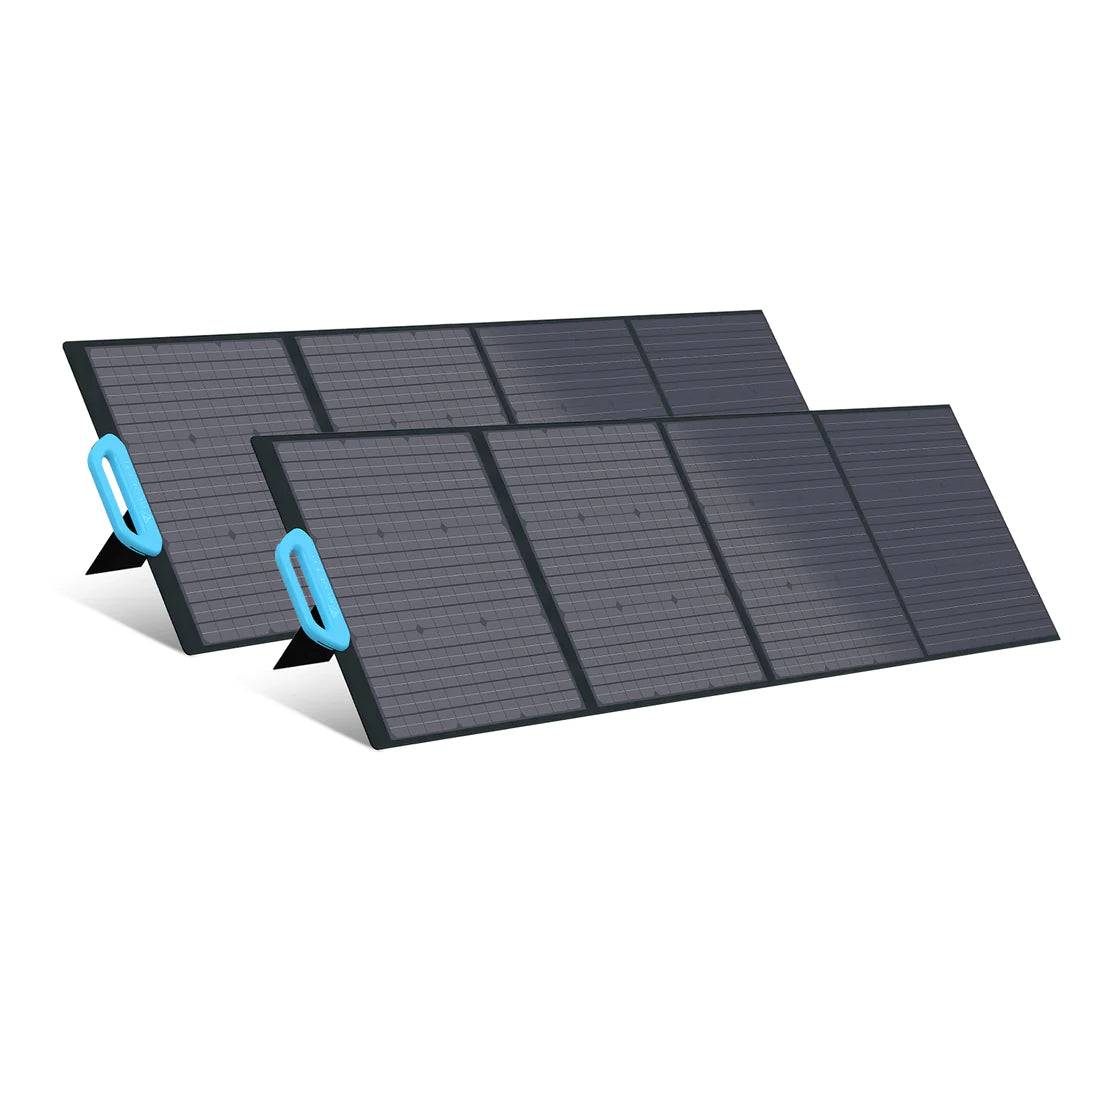 Bluetti PV200 Portable Solar Panel